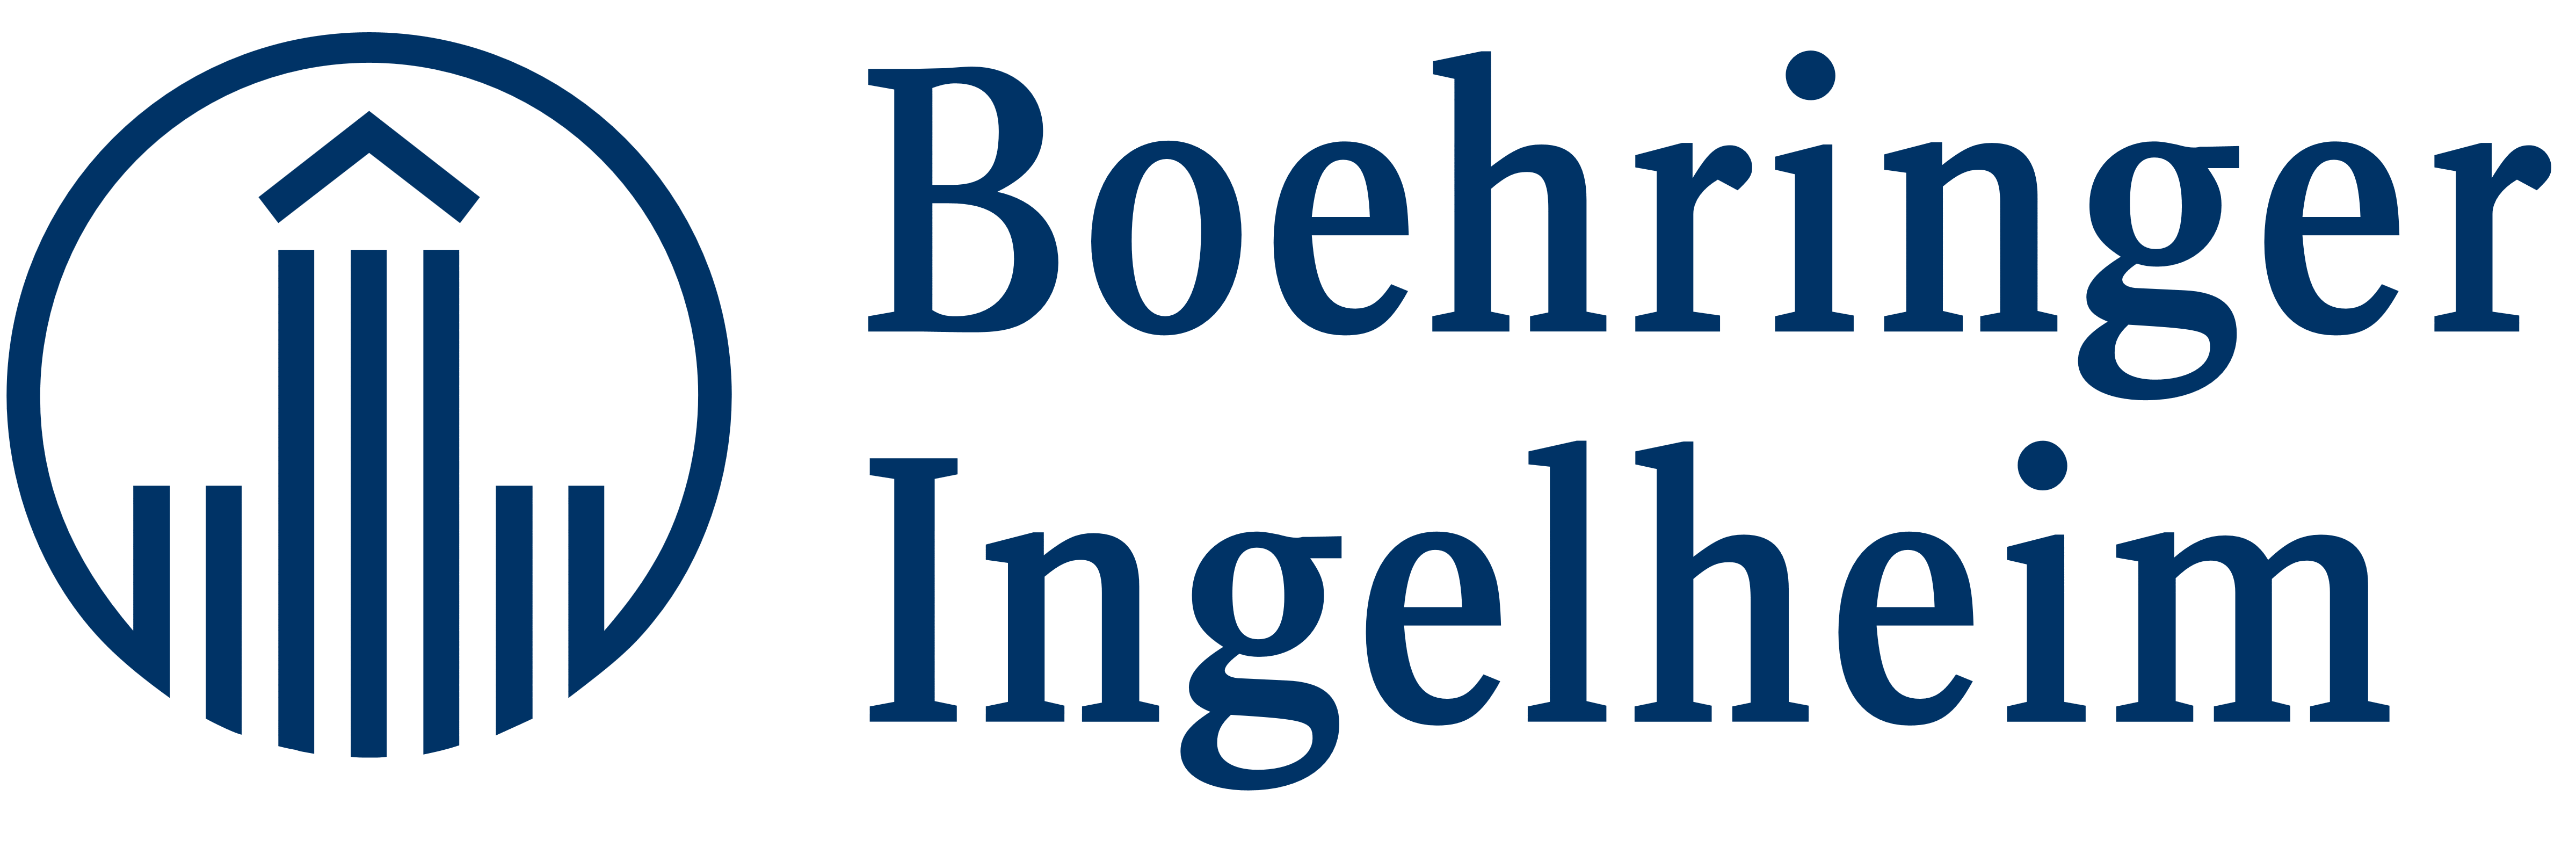 Boehringer Logo - Boehringer Ingelheim